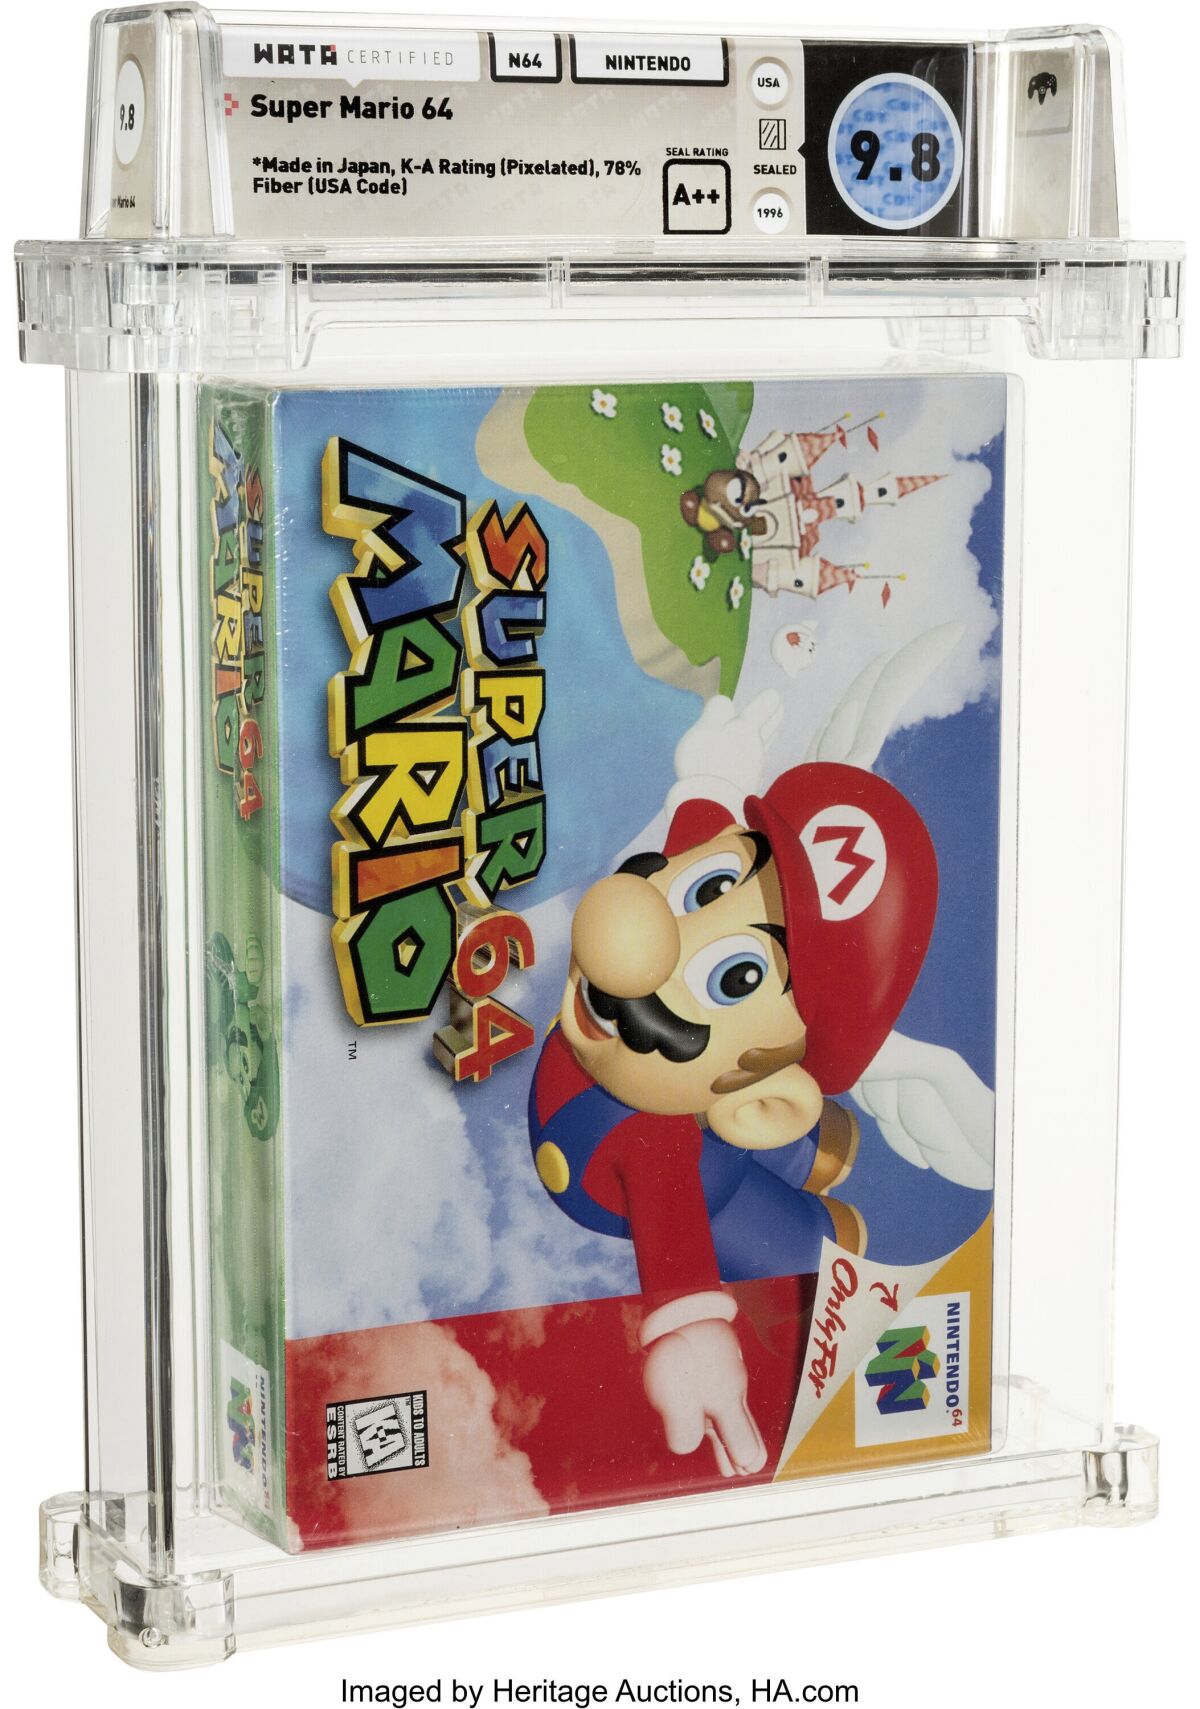 En esta imagen cortesía de Heritage Auctions se muestra una copia sin abrir del juego Super Mario 64 de Nintendo